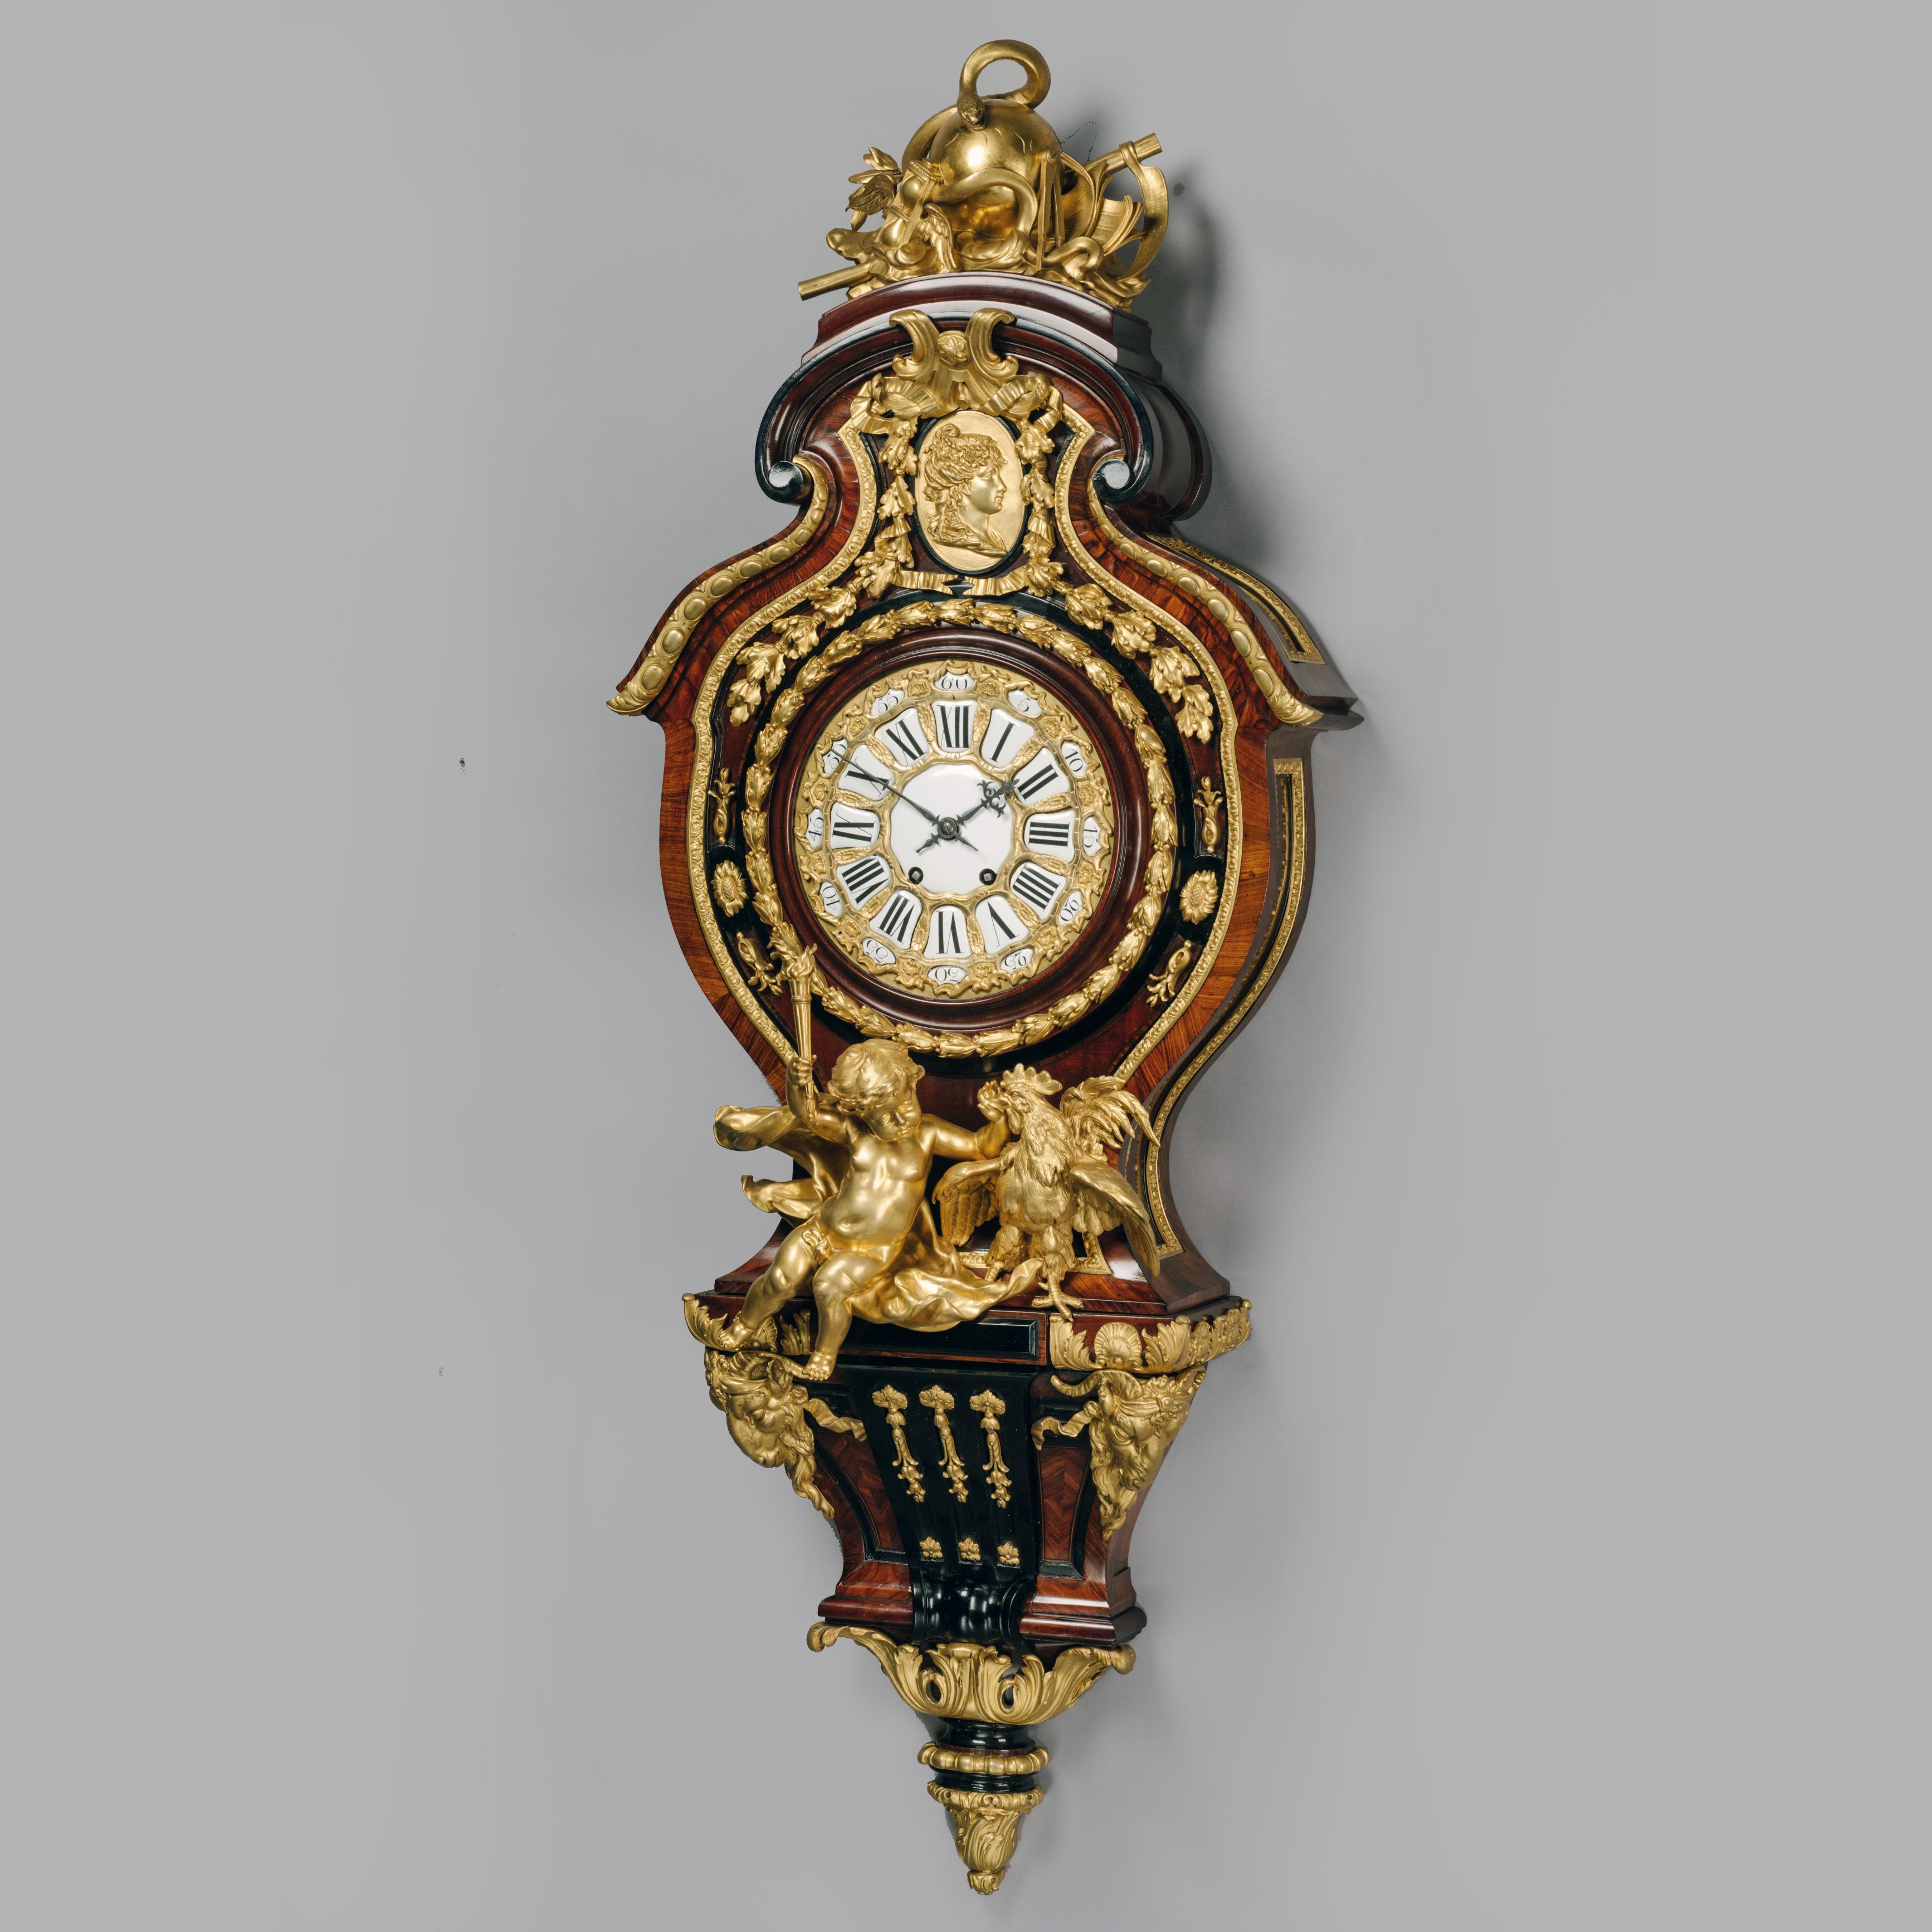 Importante et extrêmement rare horloge de cartel à grande figuration, d'après un dessin de Gilles-Marie Oppenord. 

De grandes proportions et d'une qualité exceptionnelle, cette rare horloge de cartel est inspirée d'un dessin du XVIIIe siècle datant